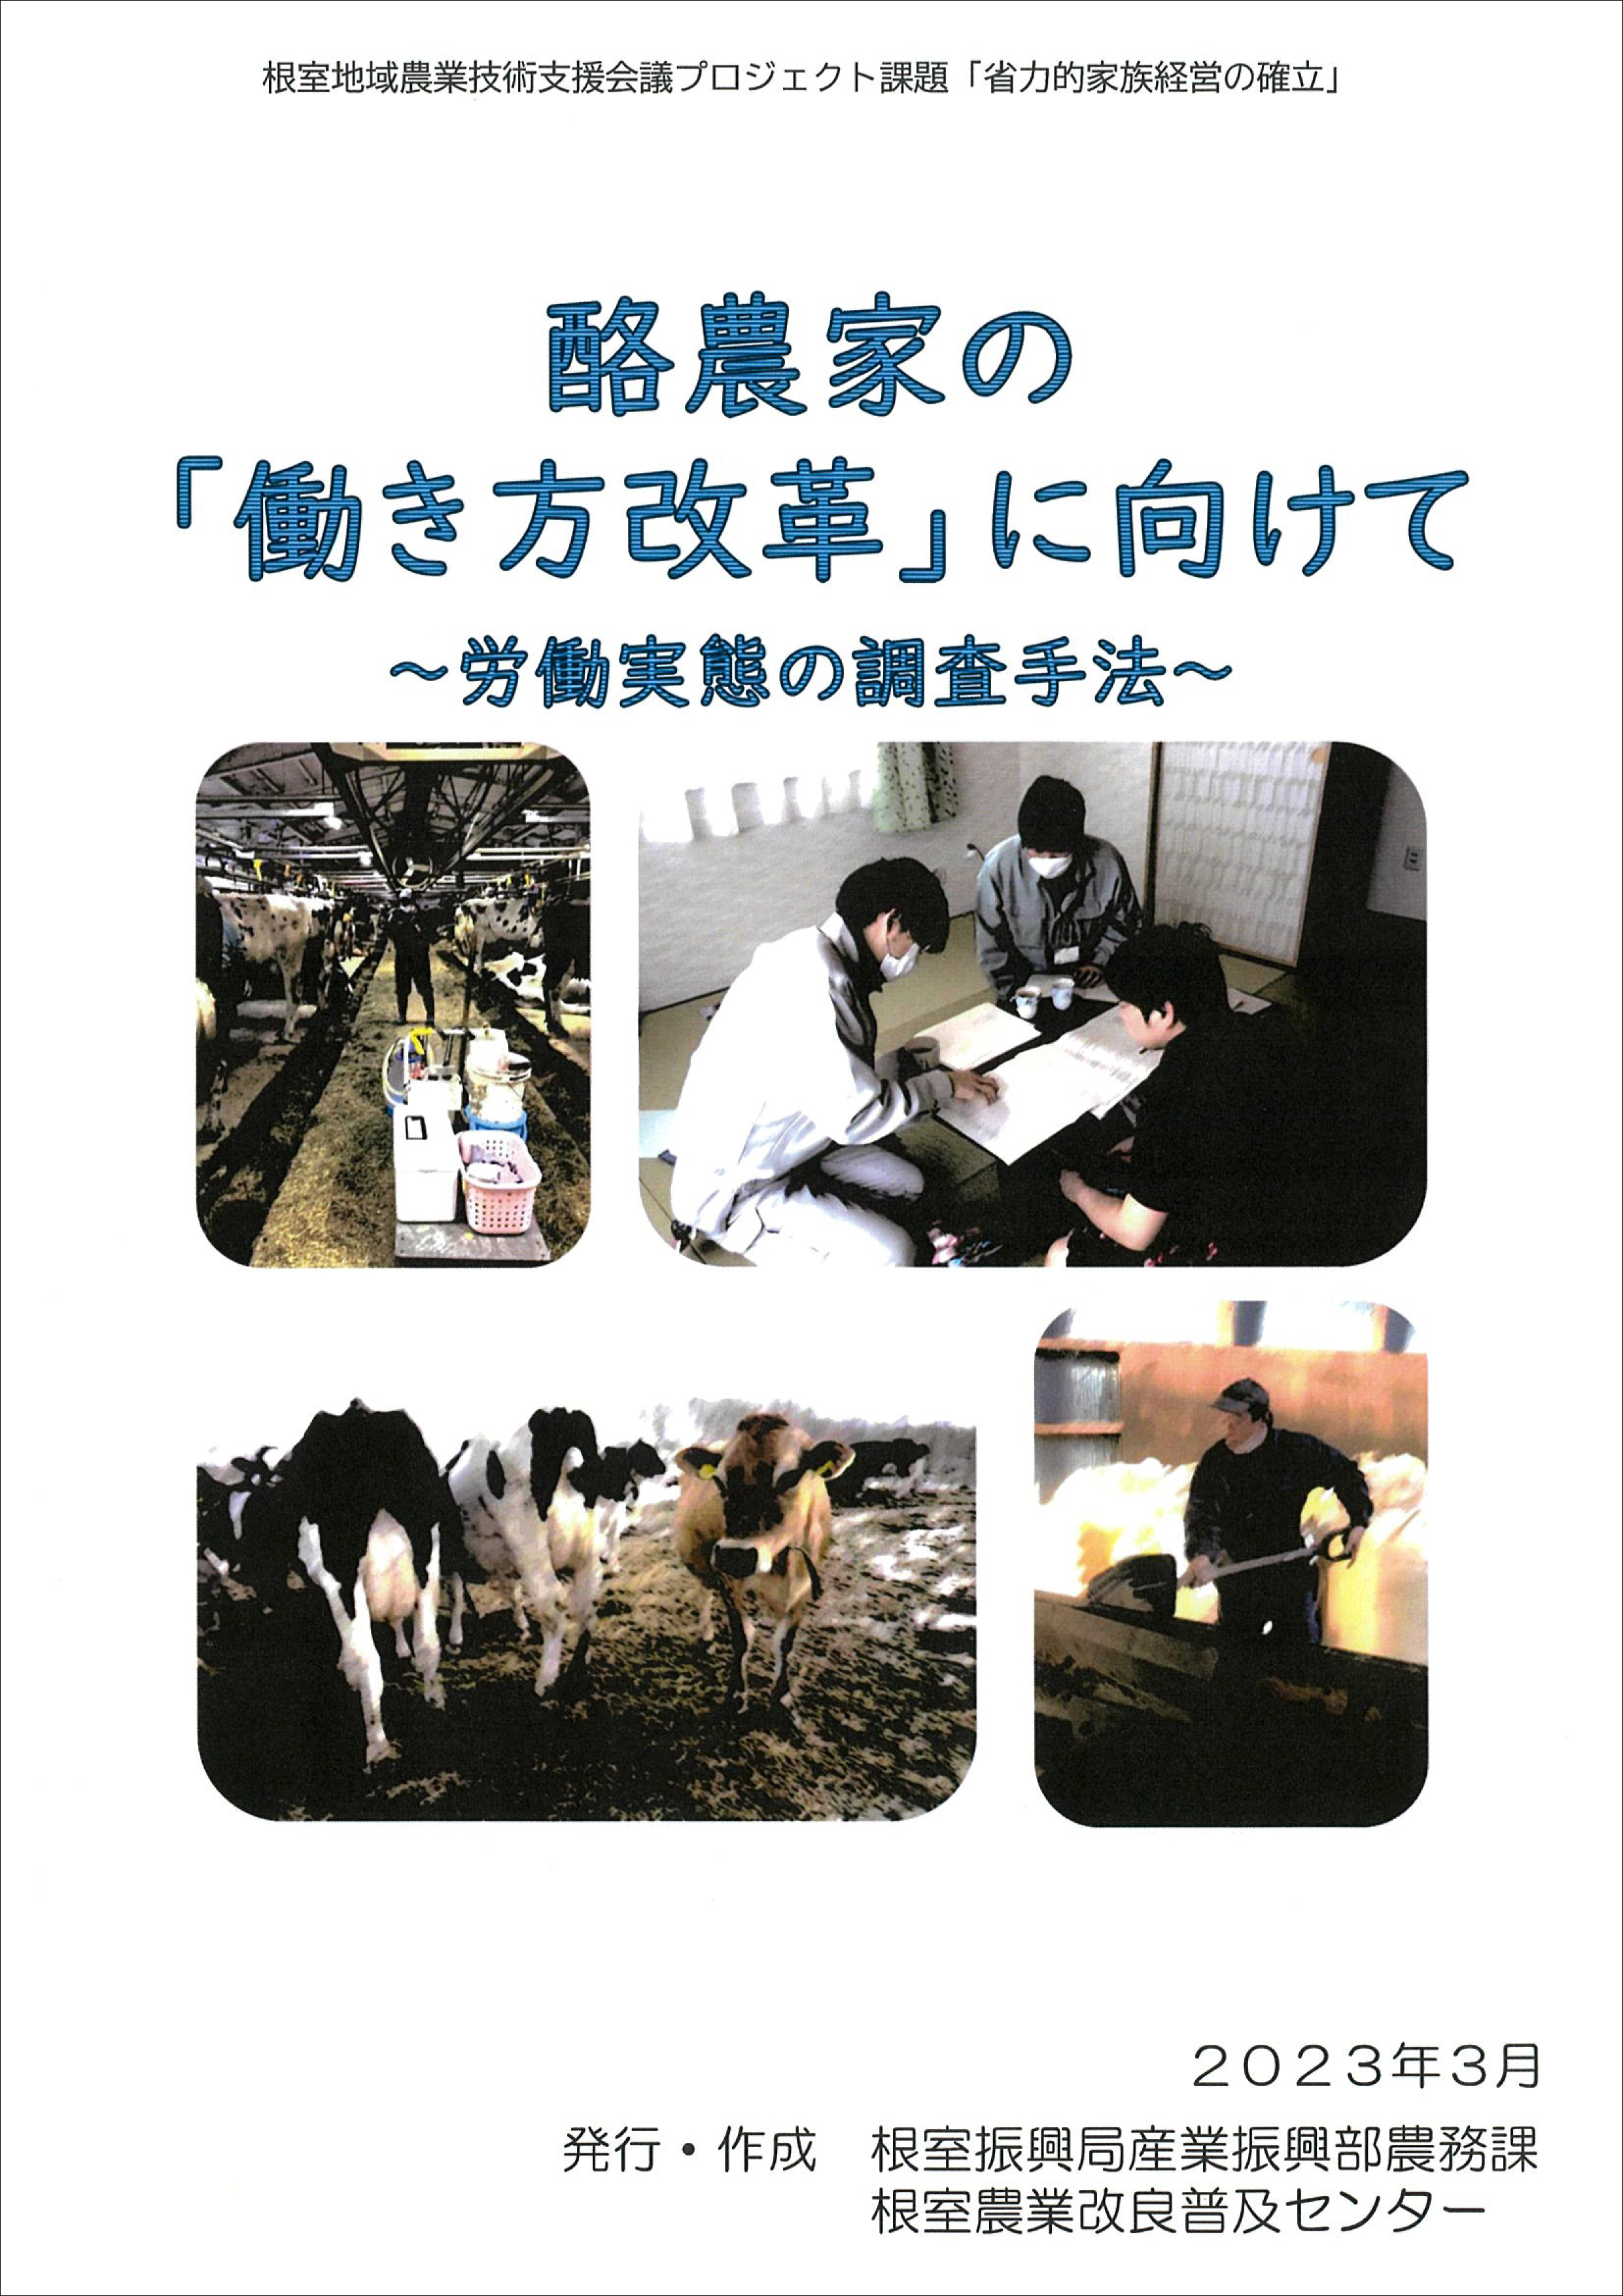 冊子「酪農家の『働き方改革』に向けて」